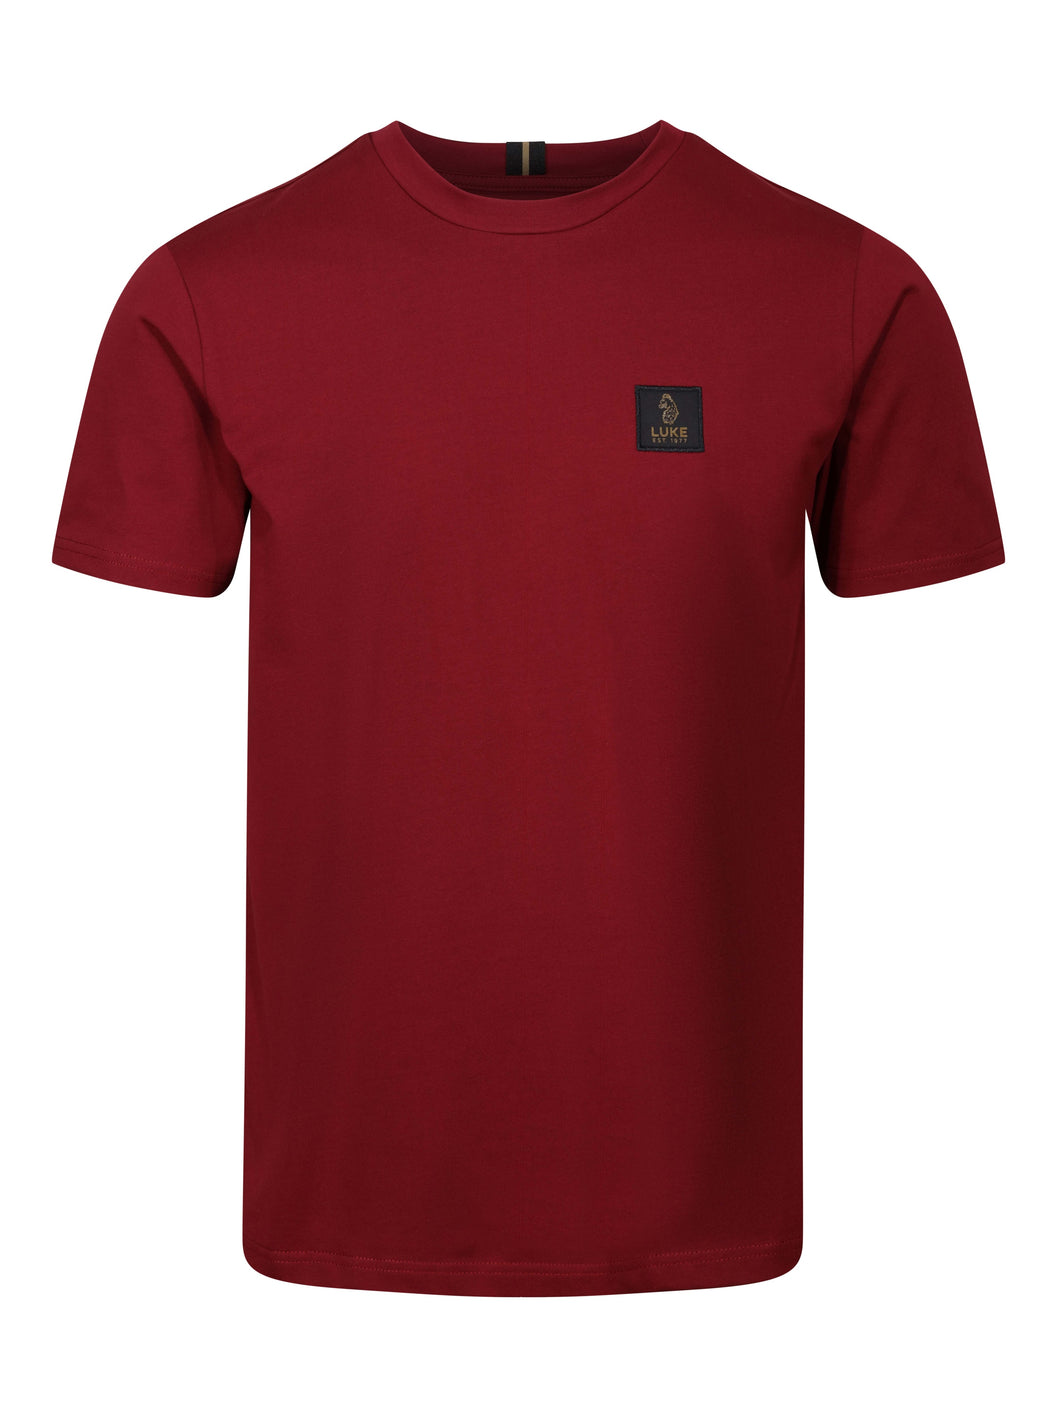 Luke 1977 Brunei Patch T-Shirt Dark Garnet